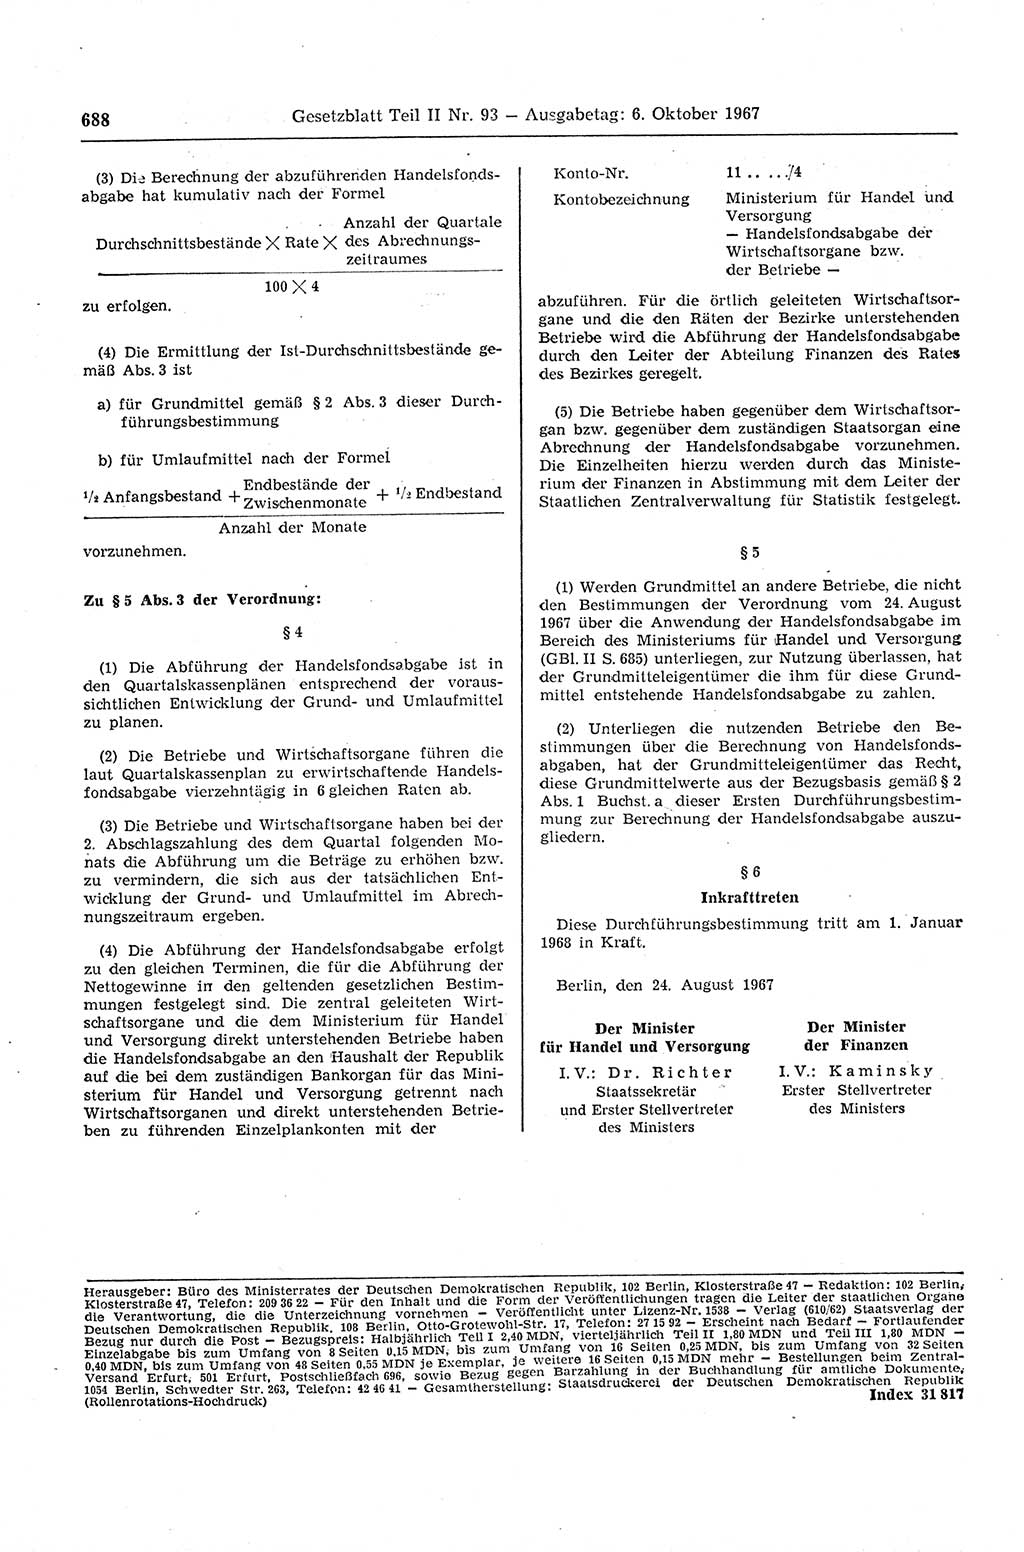 Gesetzblatt (GBl.) der Deutschen Demokratischen Republik (DDR) Teil ⅠⅠ 1967, Seite 688 (GBl. DDR ⅠⅠ 1967, S. 688)